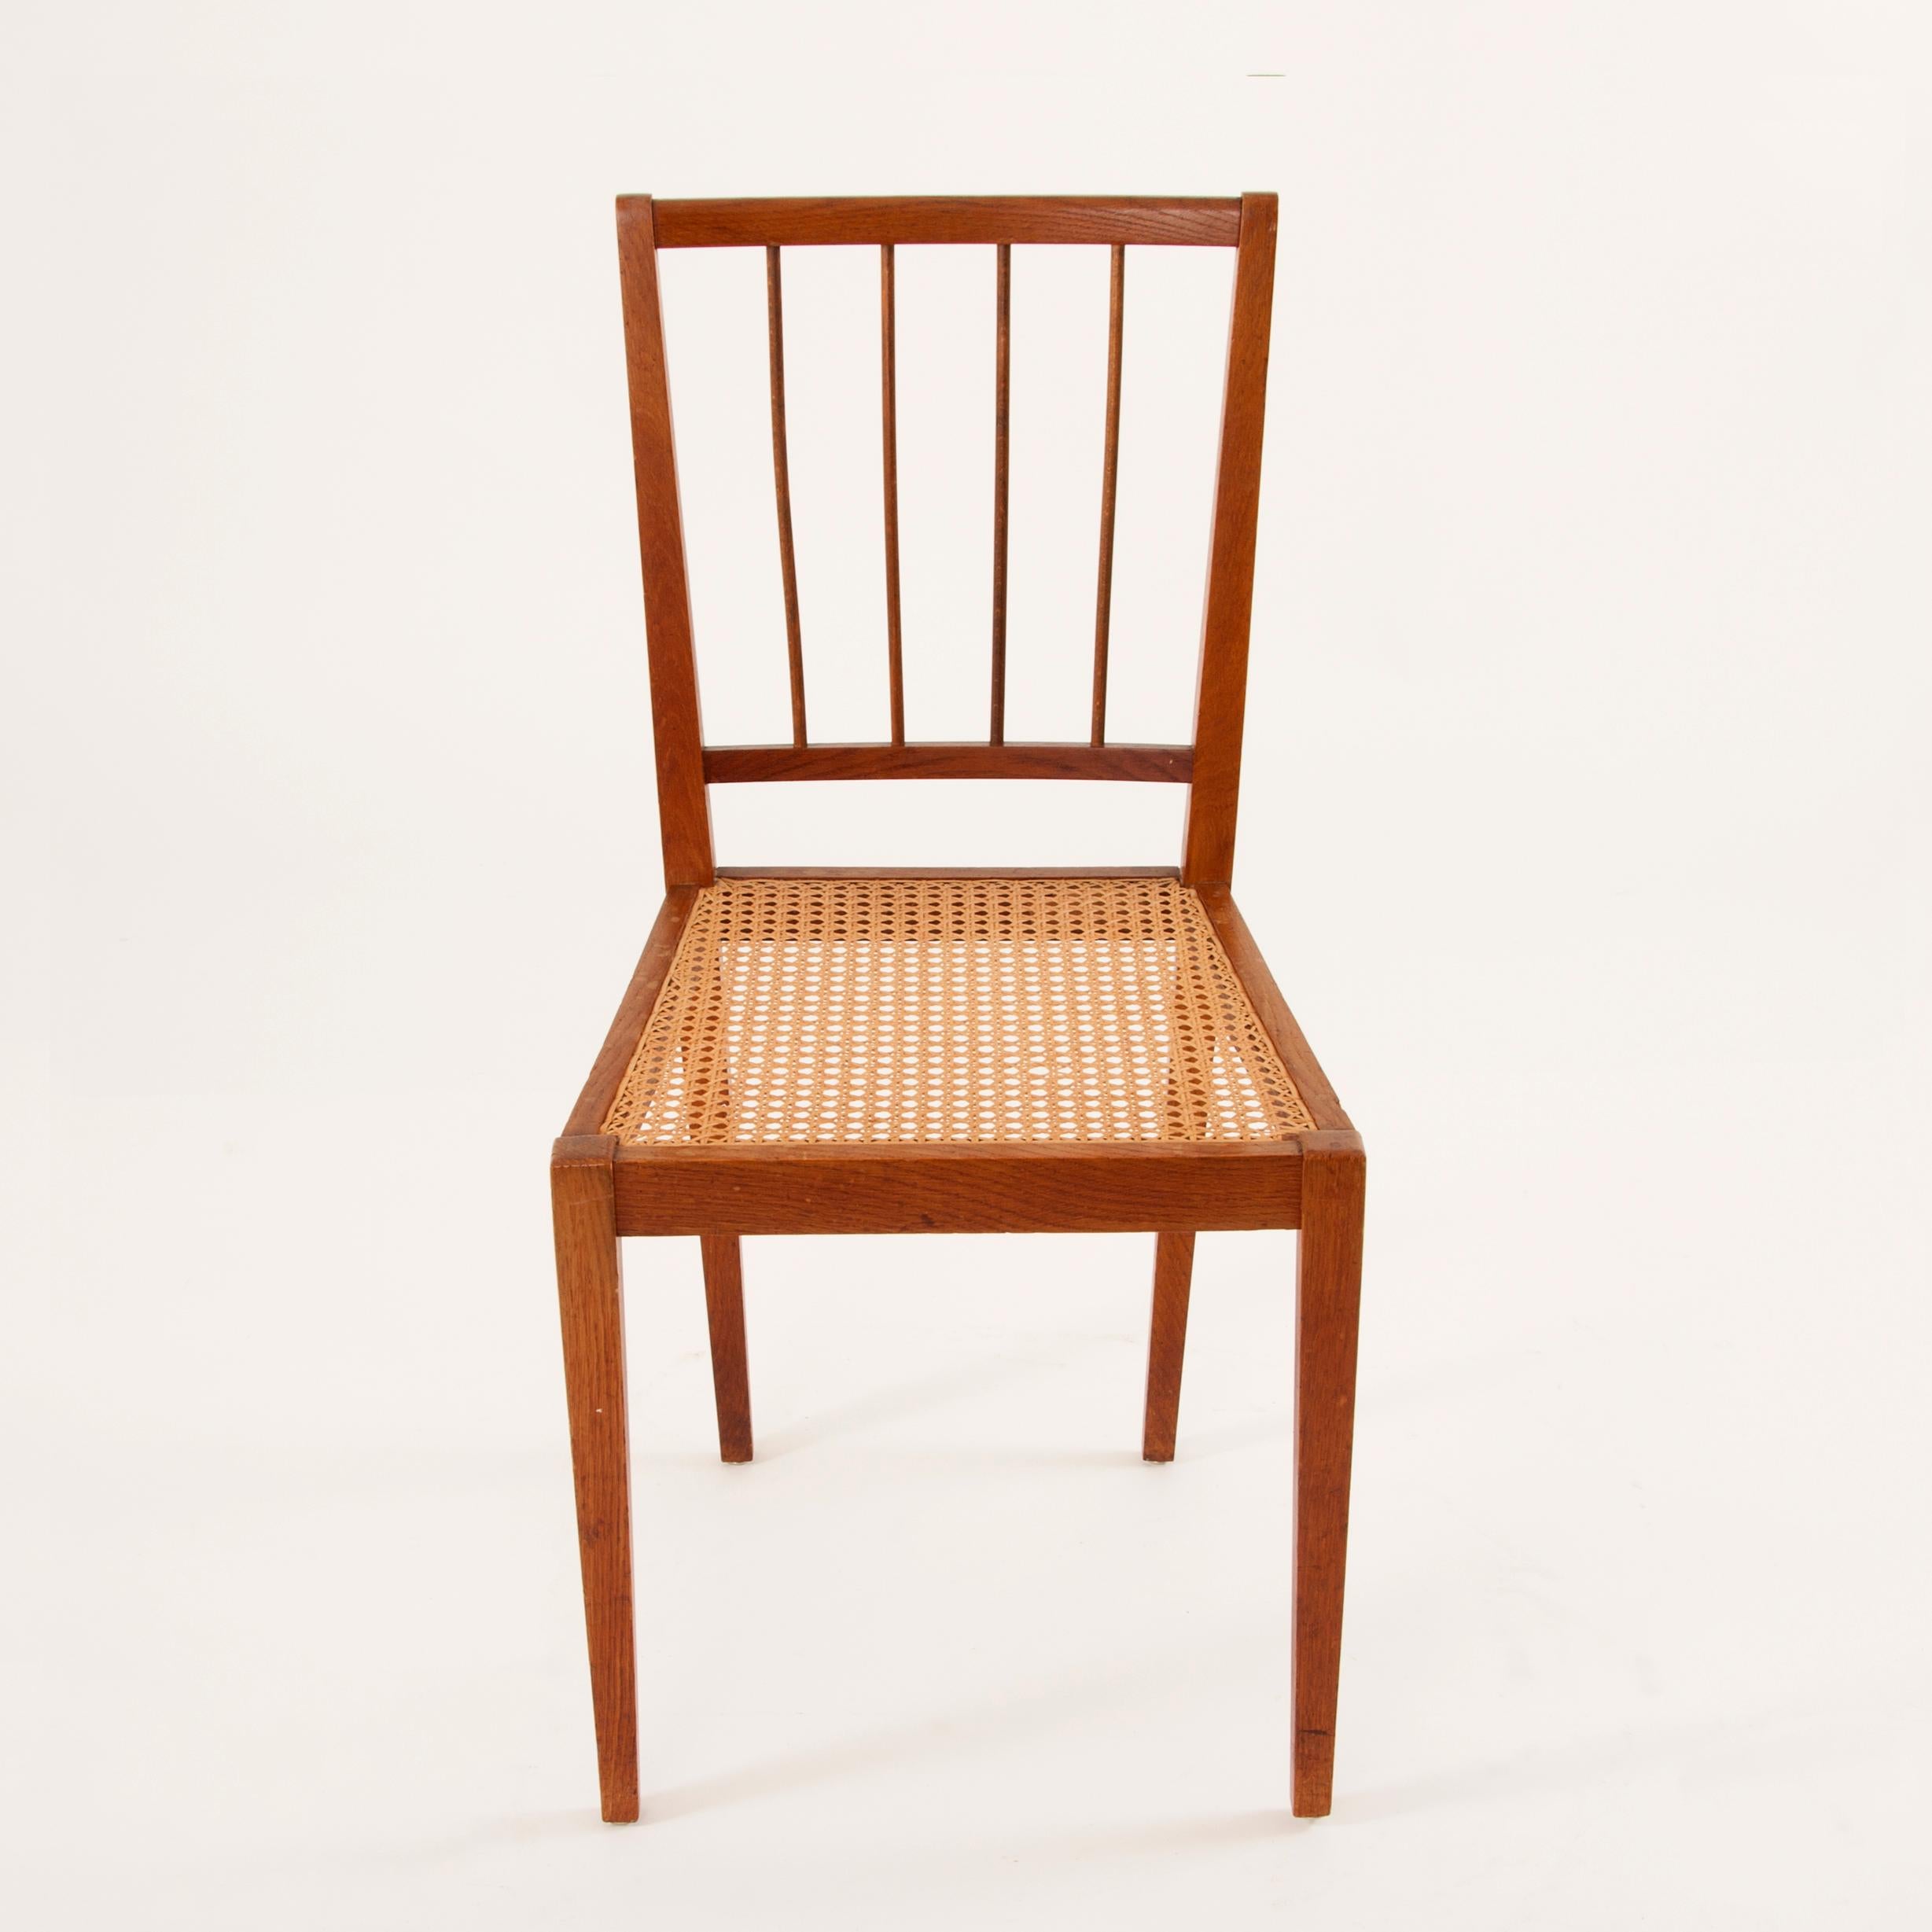 Deux belles chaises autrichiennes en bois avec assise en rotin tressé datant des années 1930. Conçu par Julius Jirasek pour Werkstätte Karl Hagenauer. Les chaises sont restaurées et en excellent état. Deux disponibles, vendus et tarifés à la pièce.